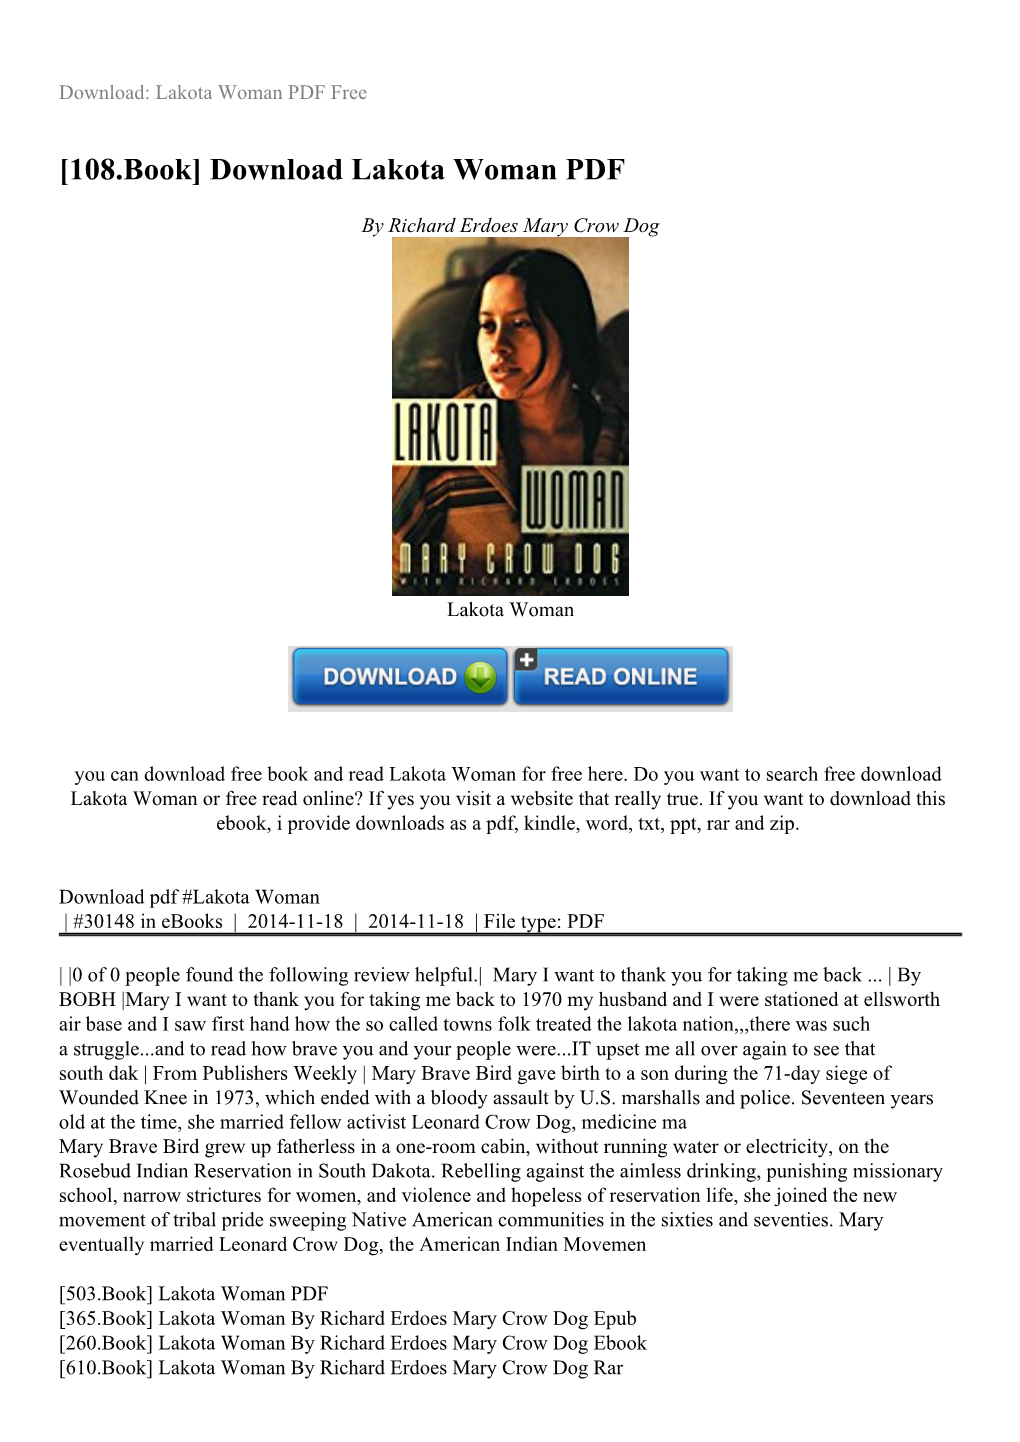 Download Lakota Woman PDF